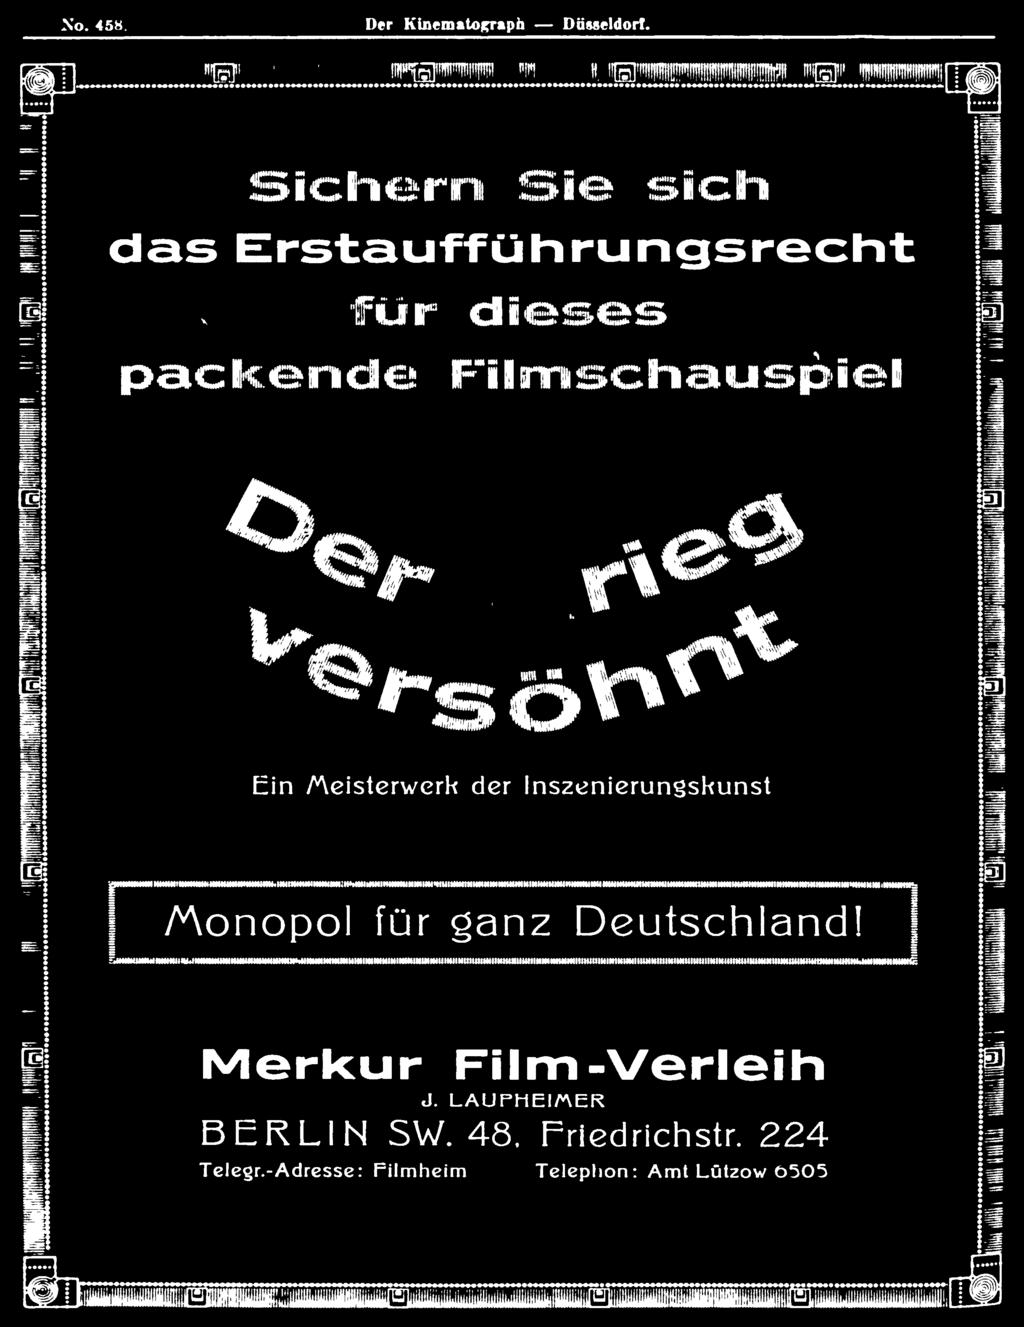 /Monopol für ganz Deutschland! Merkur Film-Verleih J.